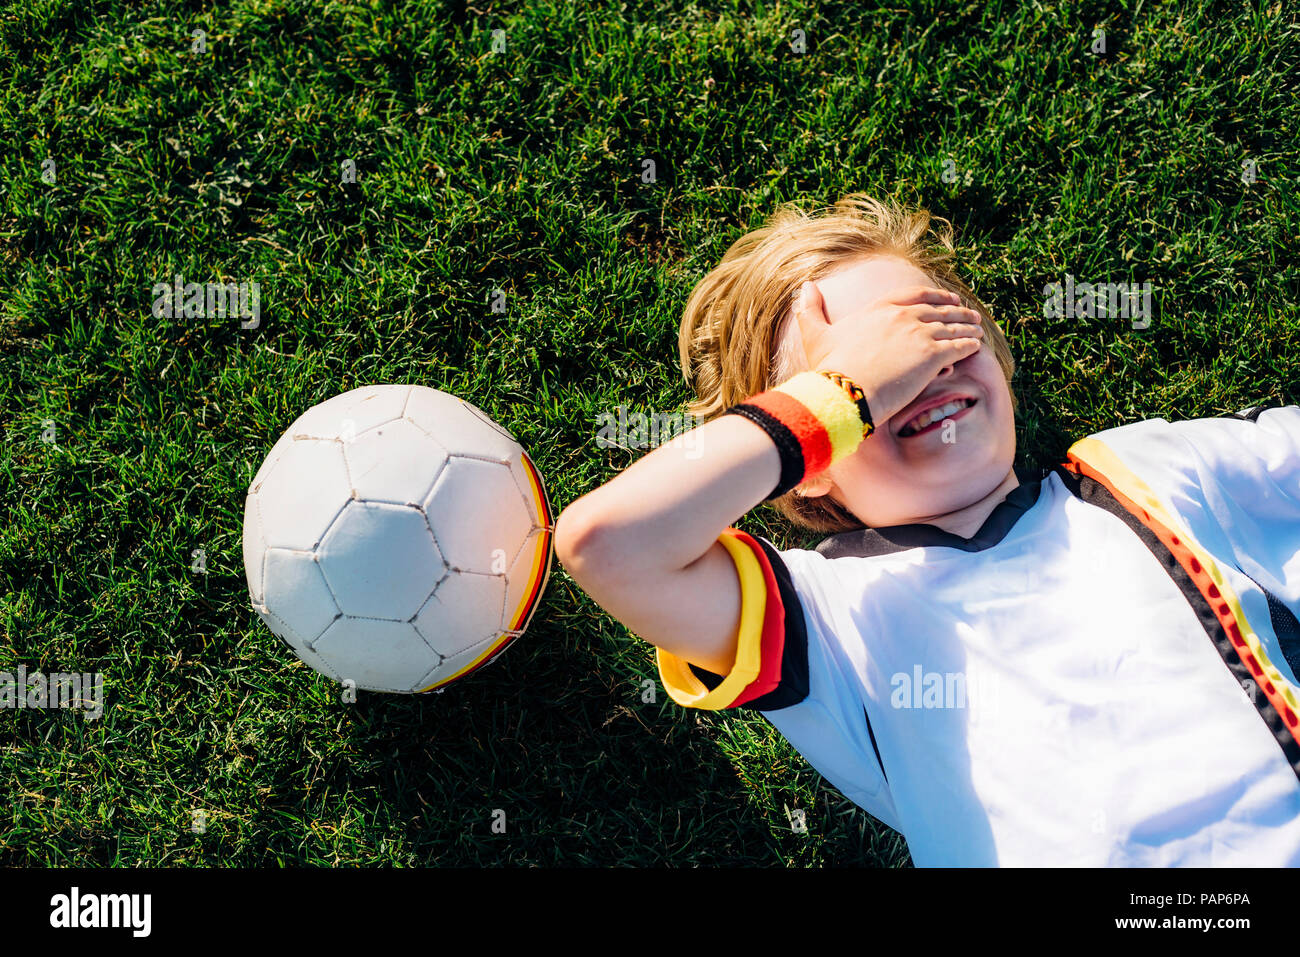 Junge im deutschen Fussball shirt liegen auf Gras, die Augen Stockfoto